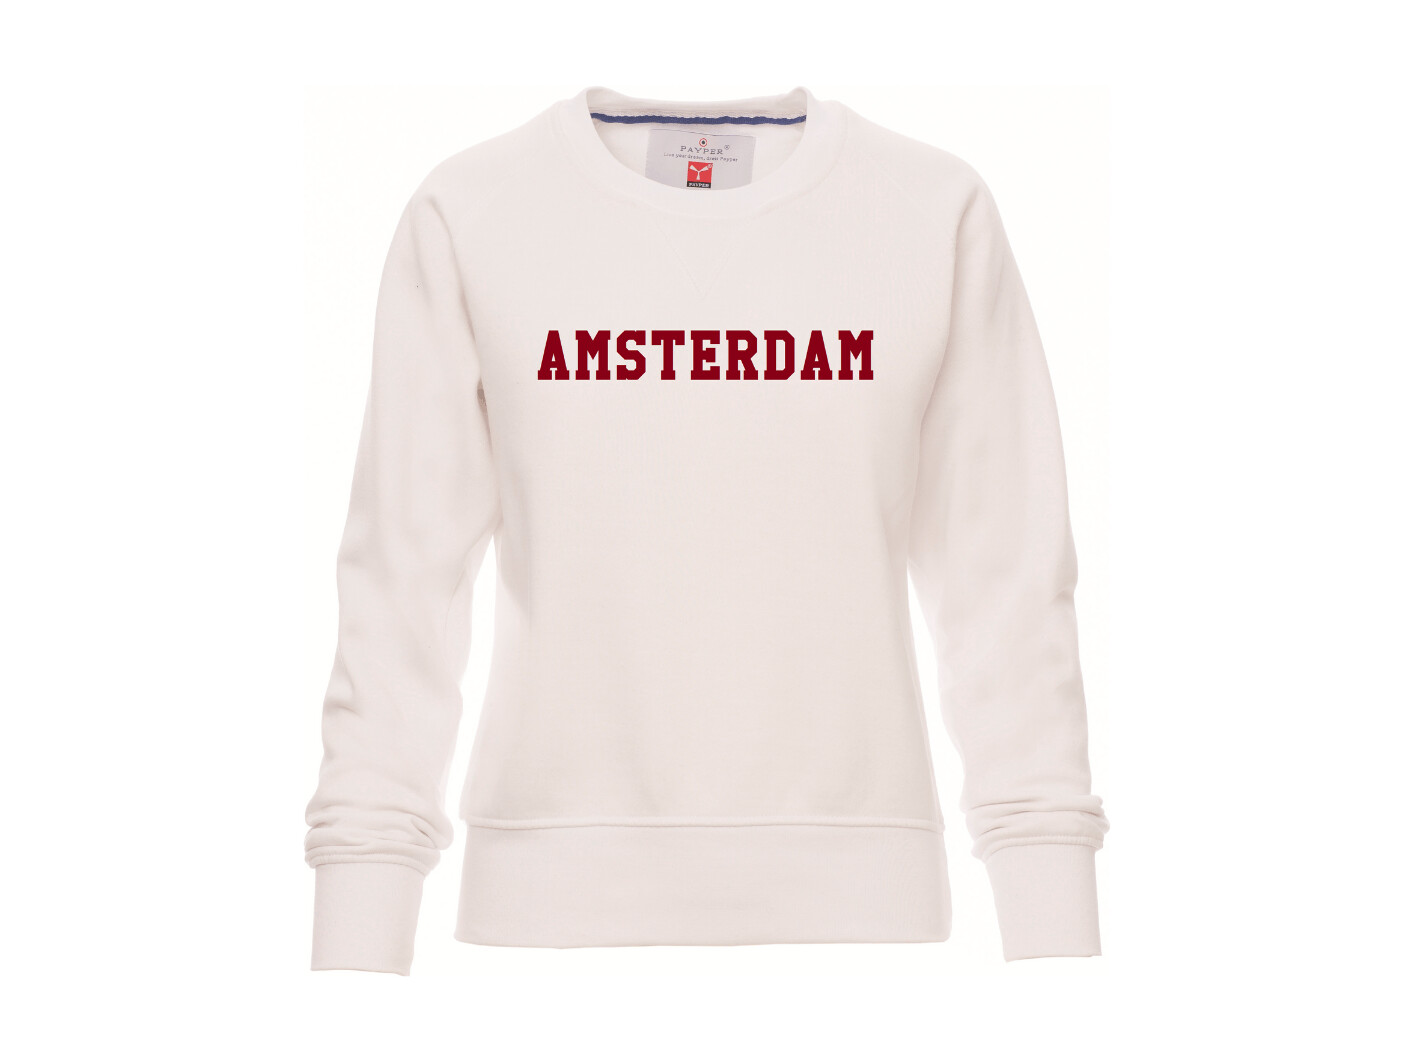 specificeren morgen Ploeg AH&BC Sweater AMSTERDAM wit (rood) dames